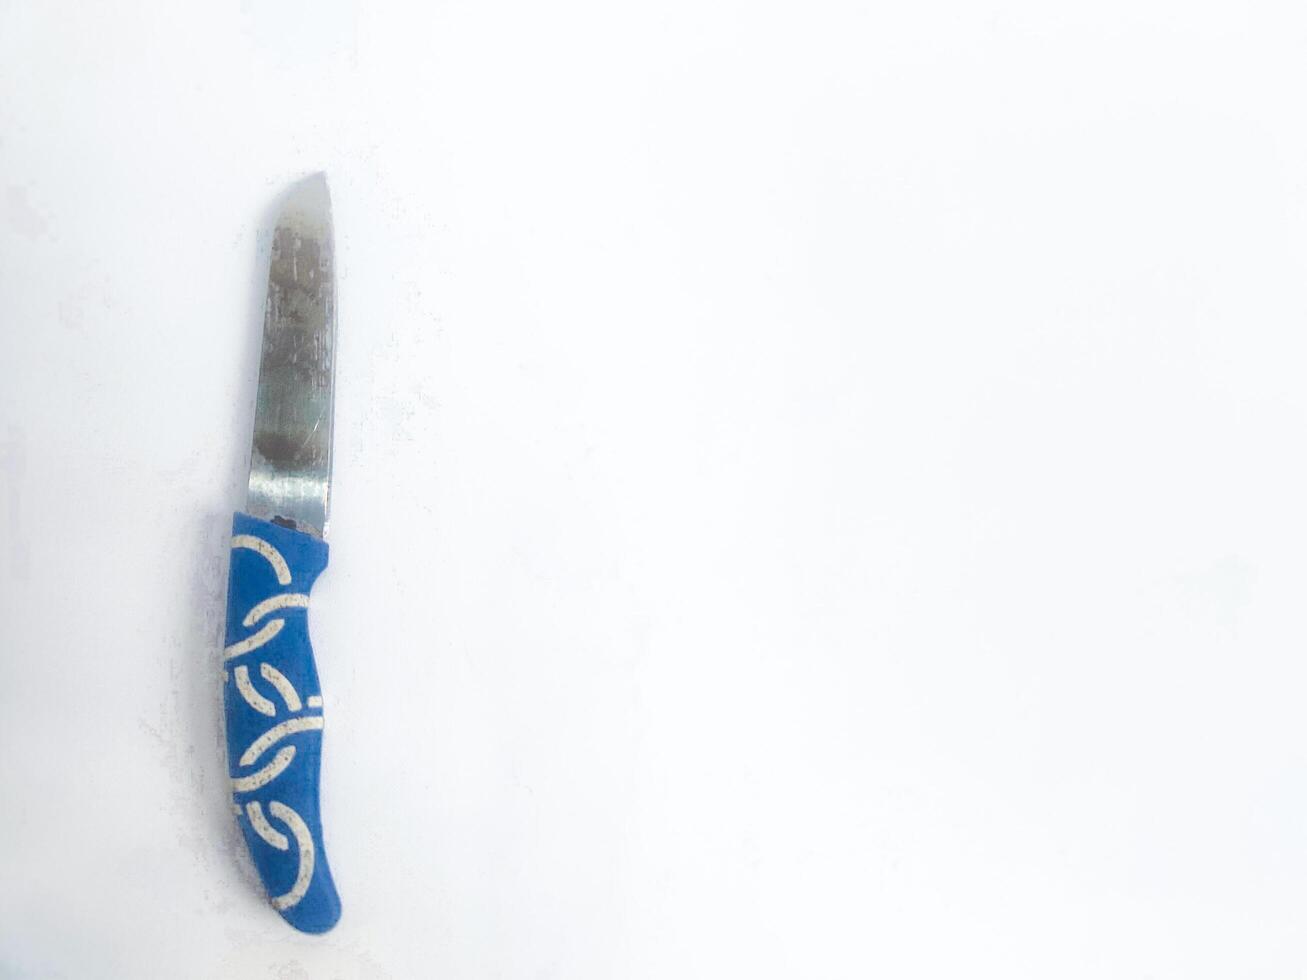 fotografie van een klein blauw snijdend mes Aan een geïsoleerd wit achtergrond foto